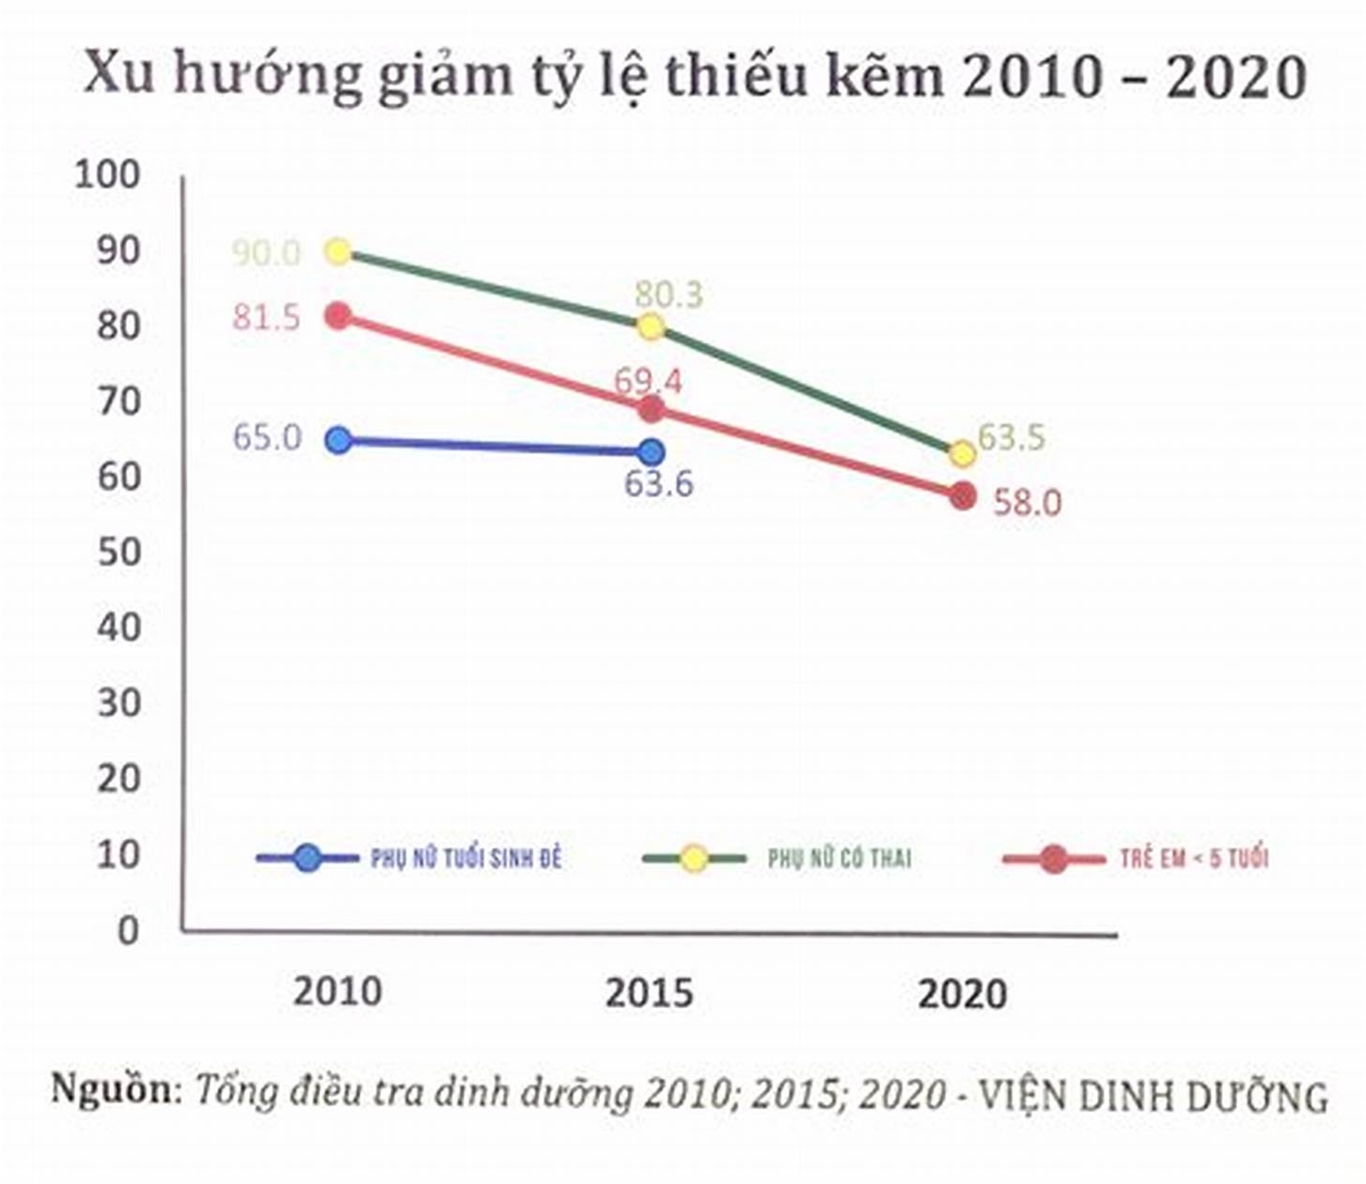 Tỷ lệ thiếu kẽm ở Việt Nam theo báo cáo của Viện Dinh Dưỡng